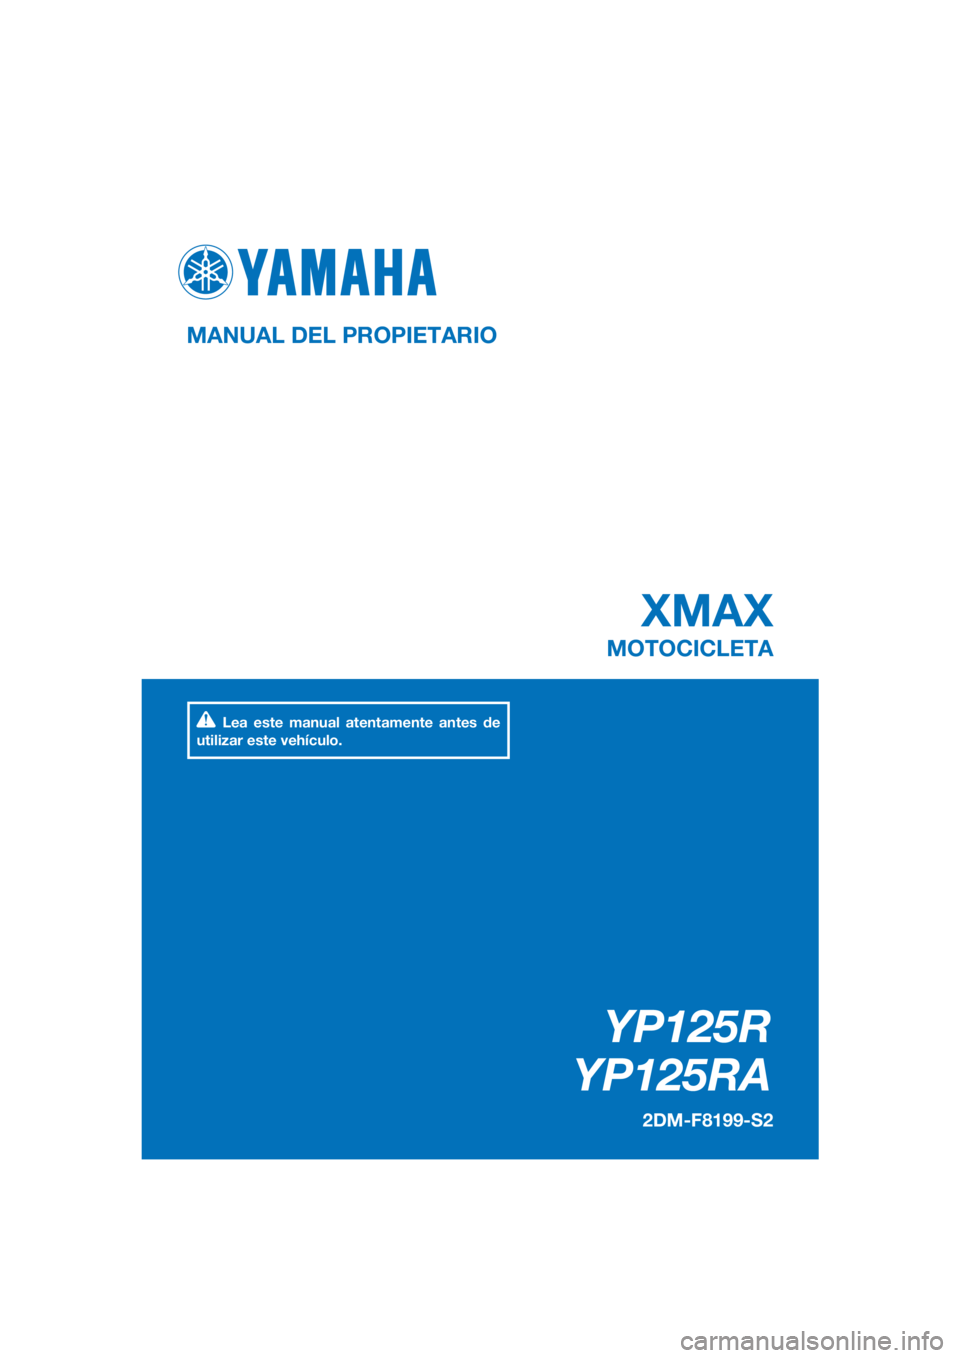 YAMAHA XMAX 125 2016  Manuale de Empleo (in Spanish) PANTONE285C
YP125R
YP125RA
XMAX
MANUAL DEL PROPIETARIO
2DM-F8199-S2
MOTOCICLETA
Lea este manual atentamente antes de 
utilizar este vehículo.
[Spanish  (S)] 